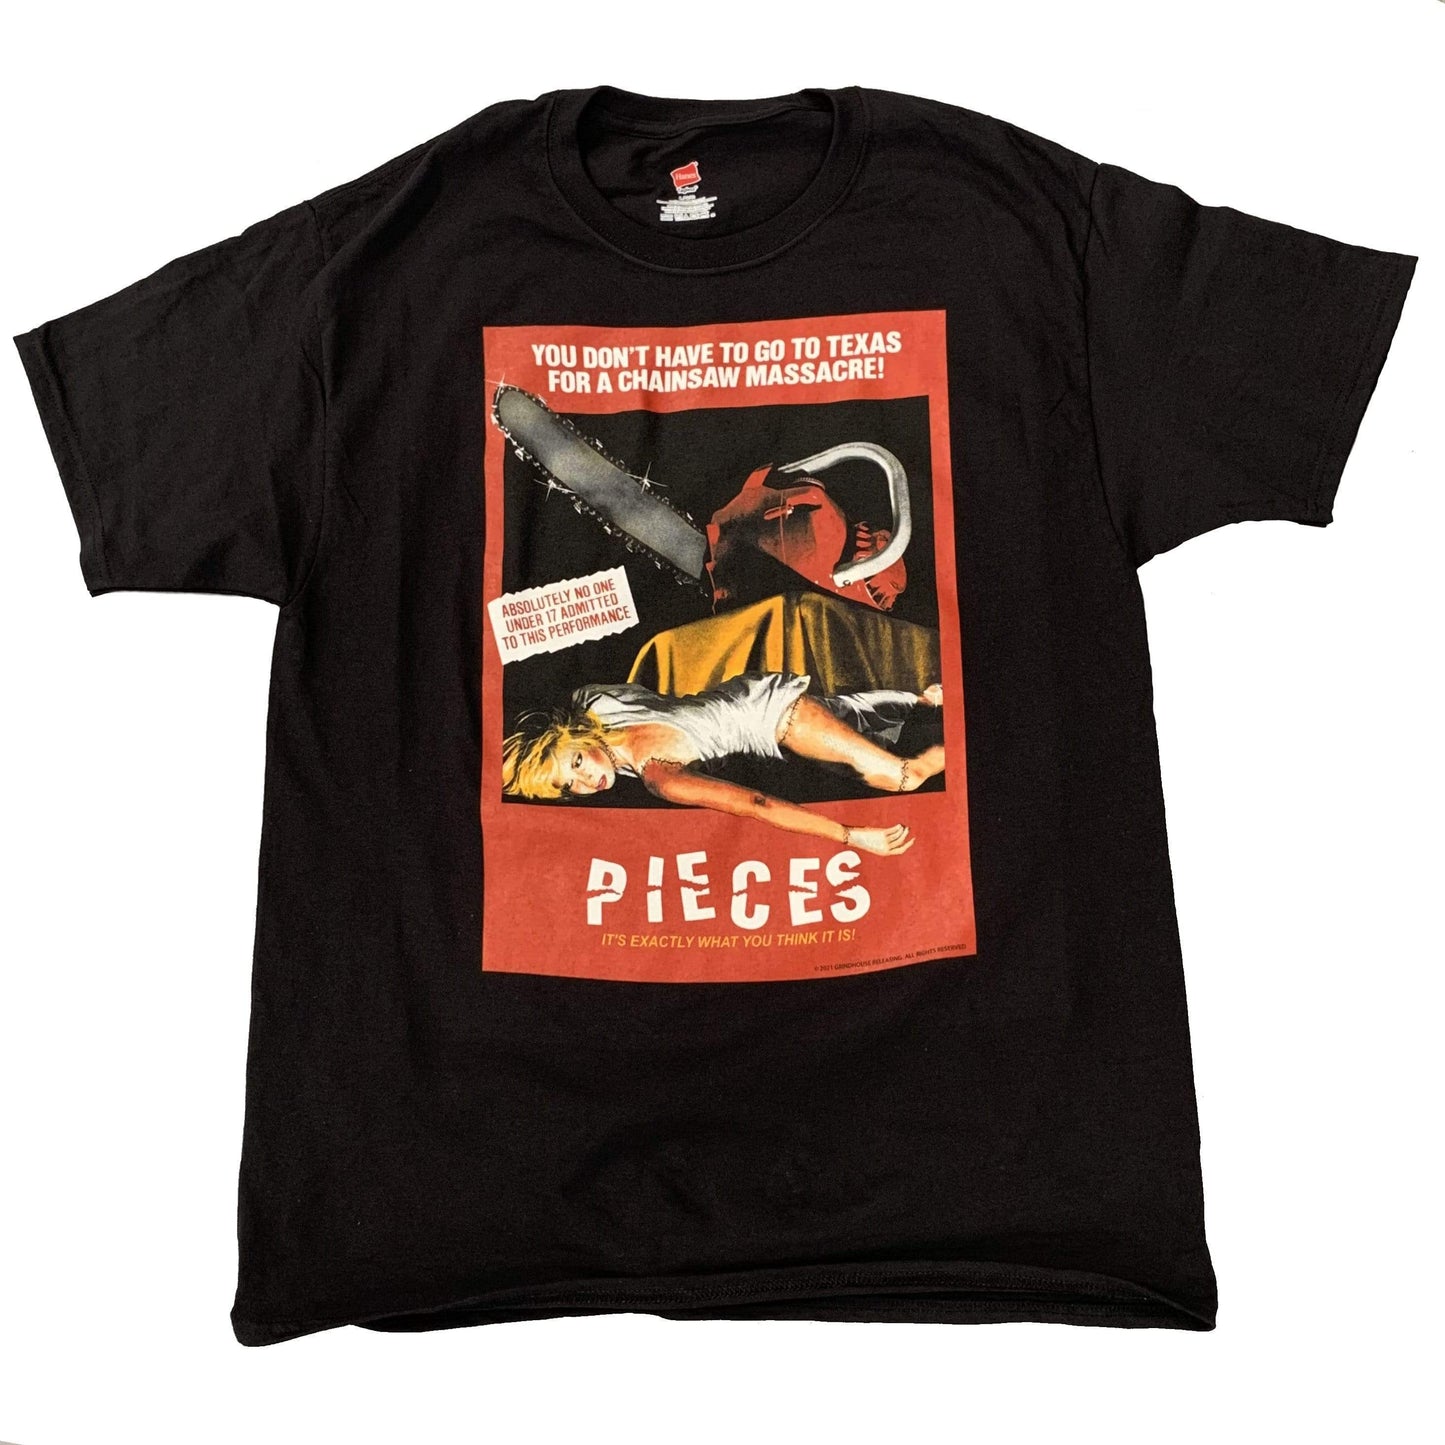 PIECES T-shirt : 1983 poster art